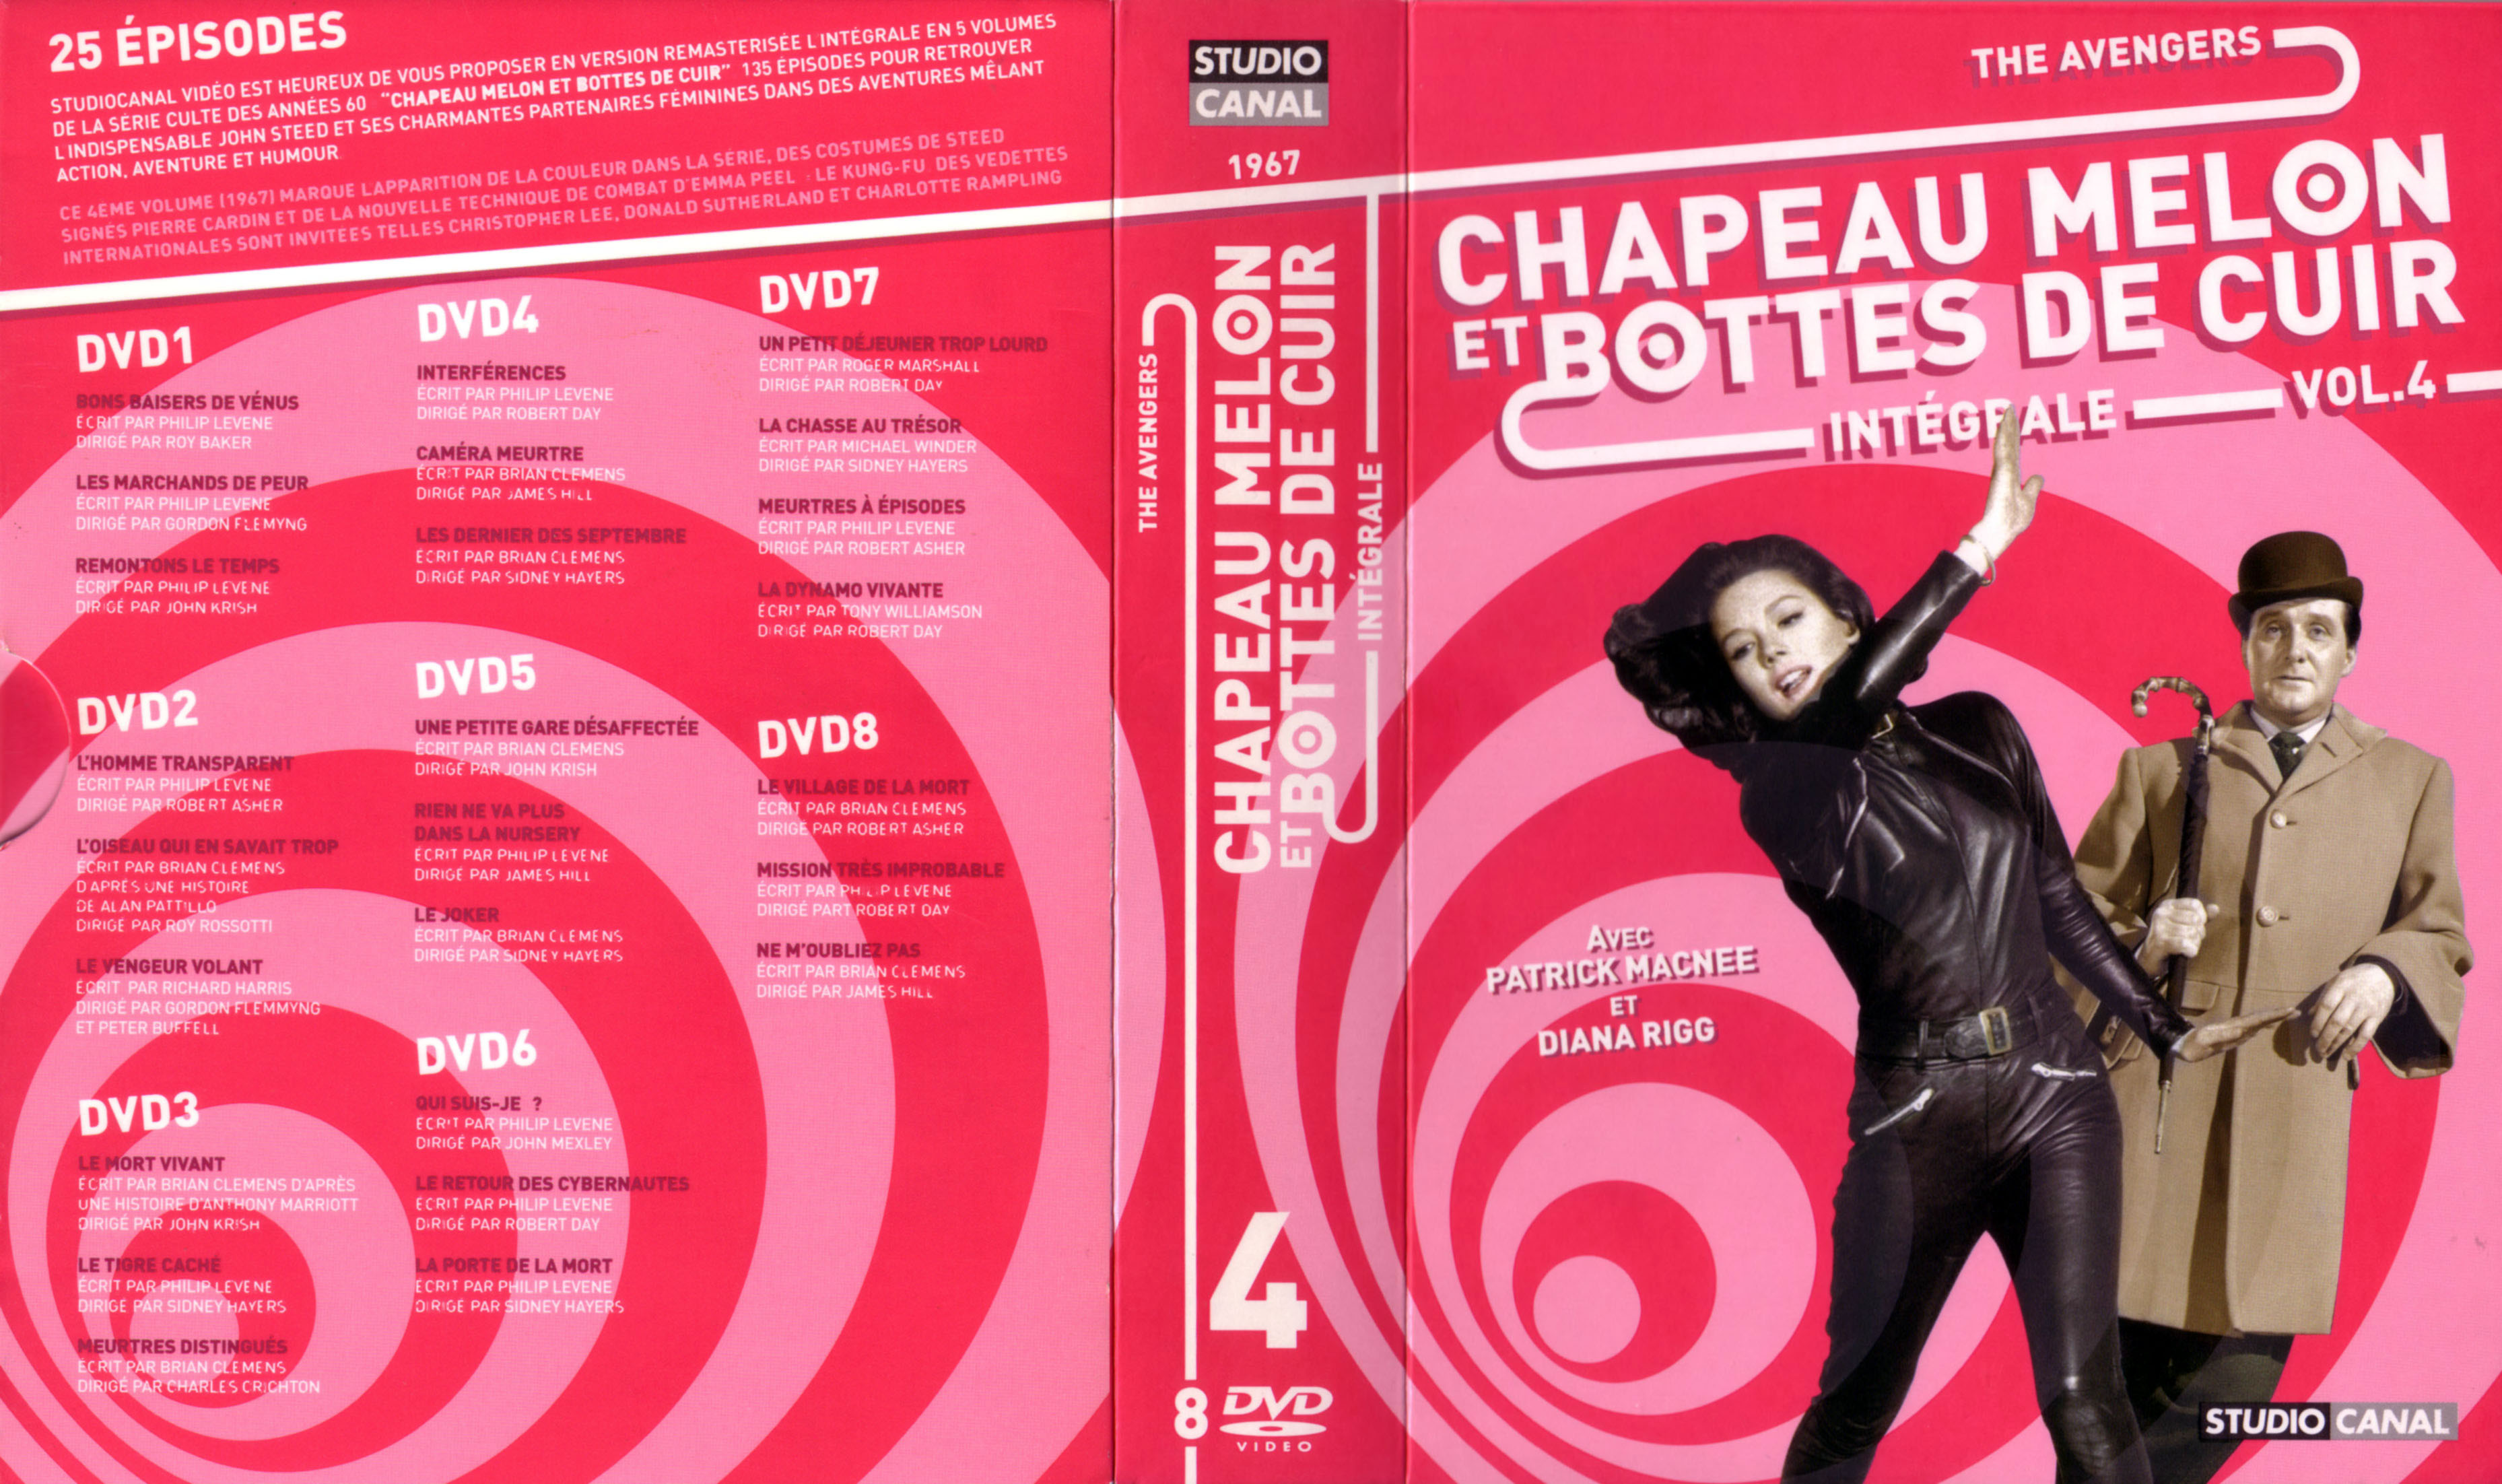 Jaquette DVD Chapeau melon et bottes de cuir Integrale vol 04